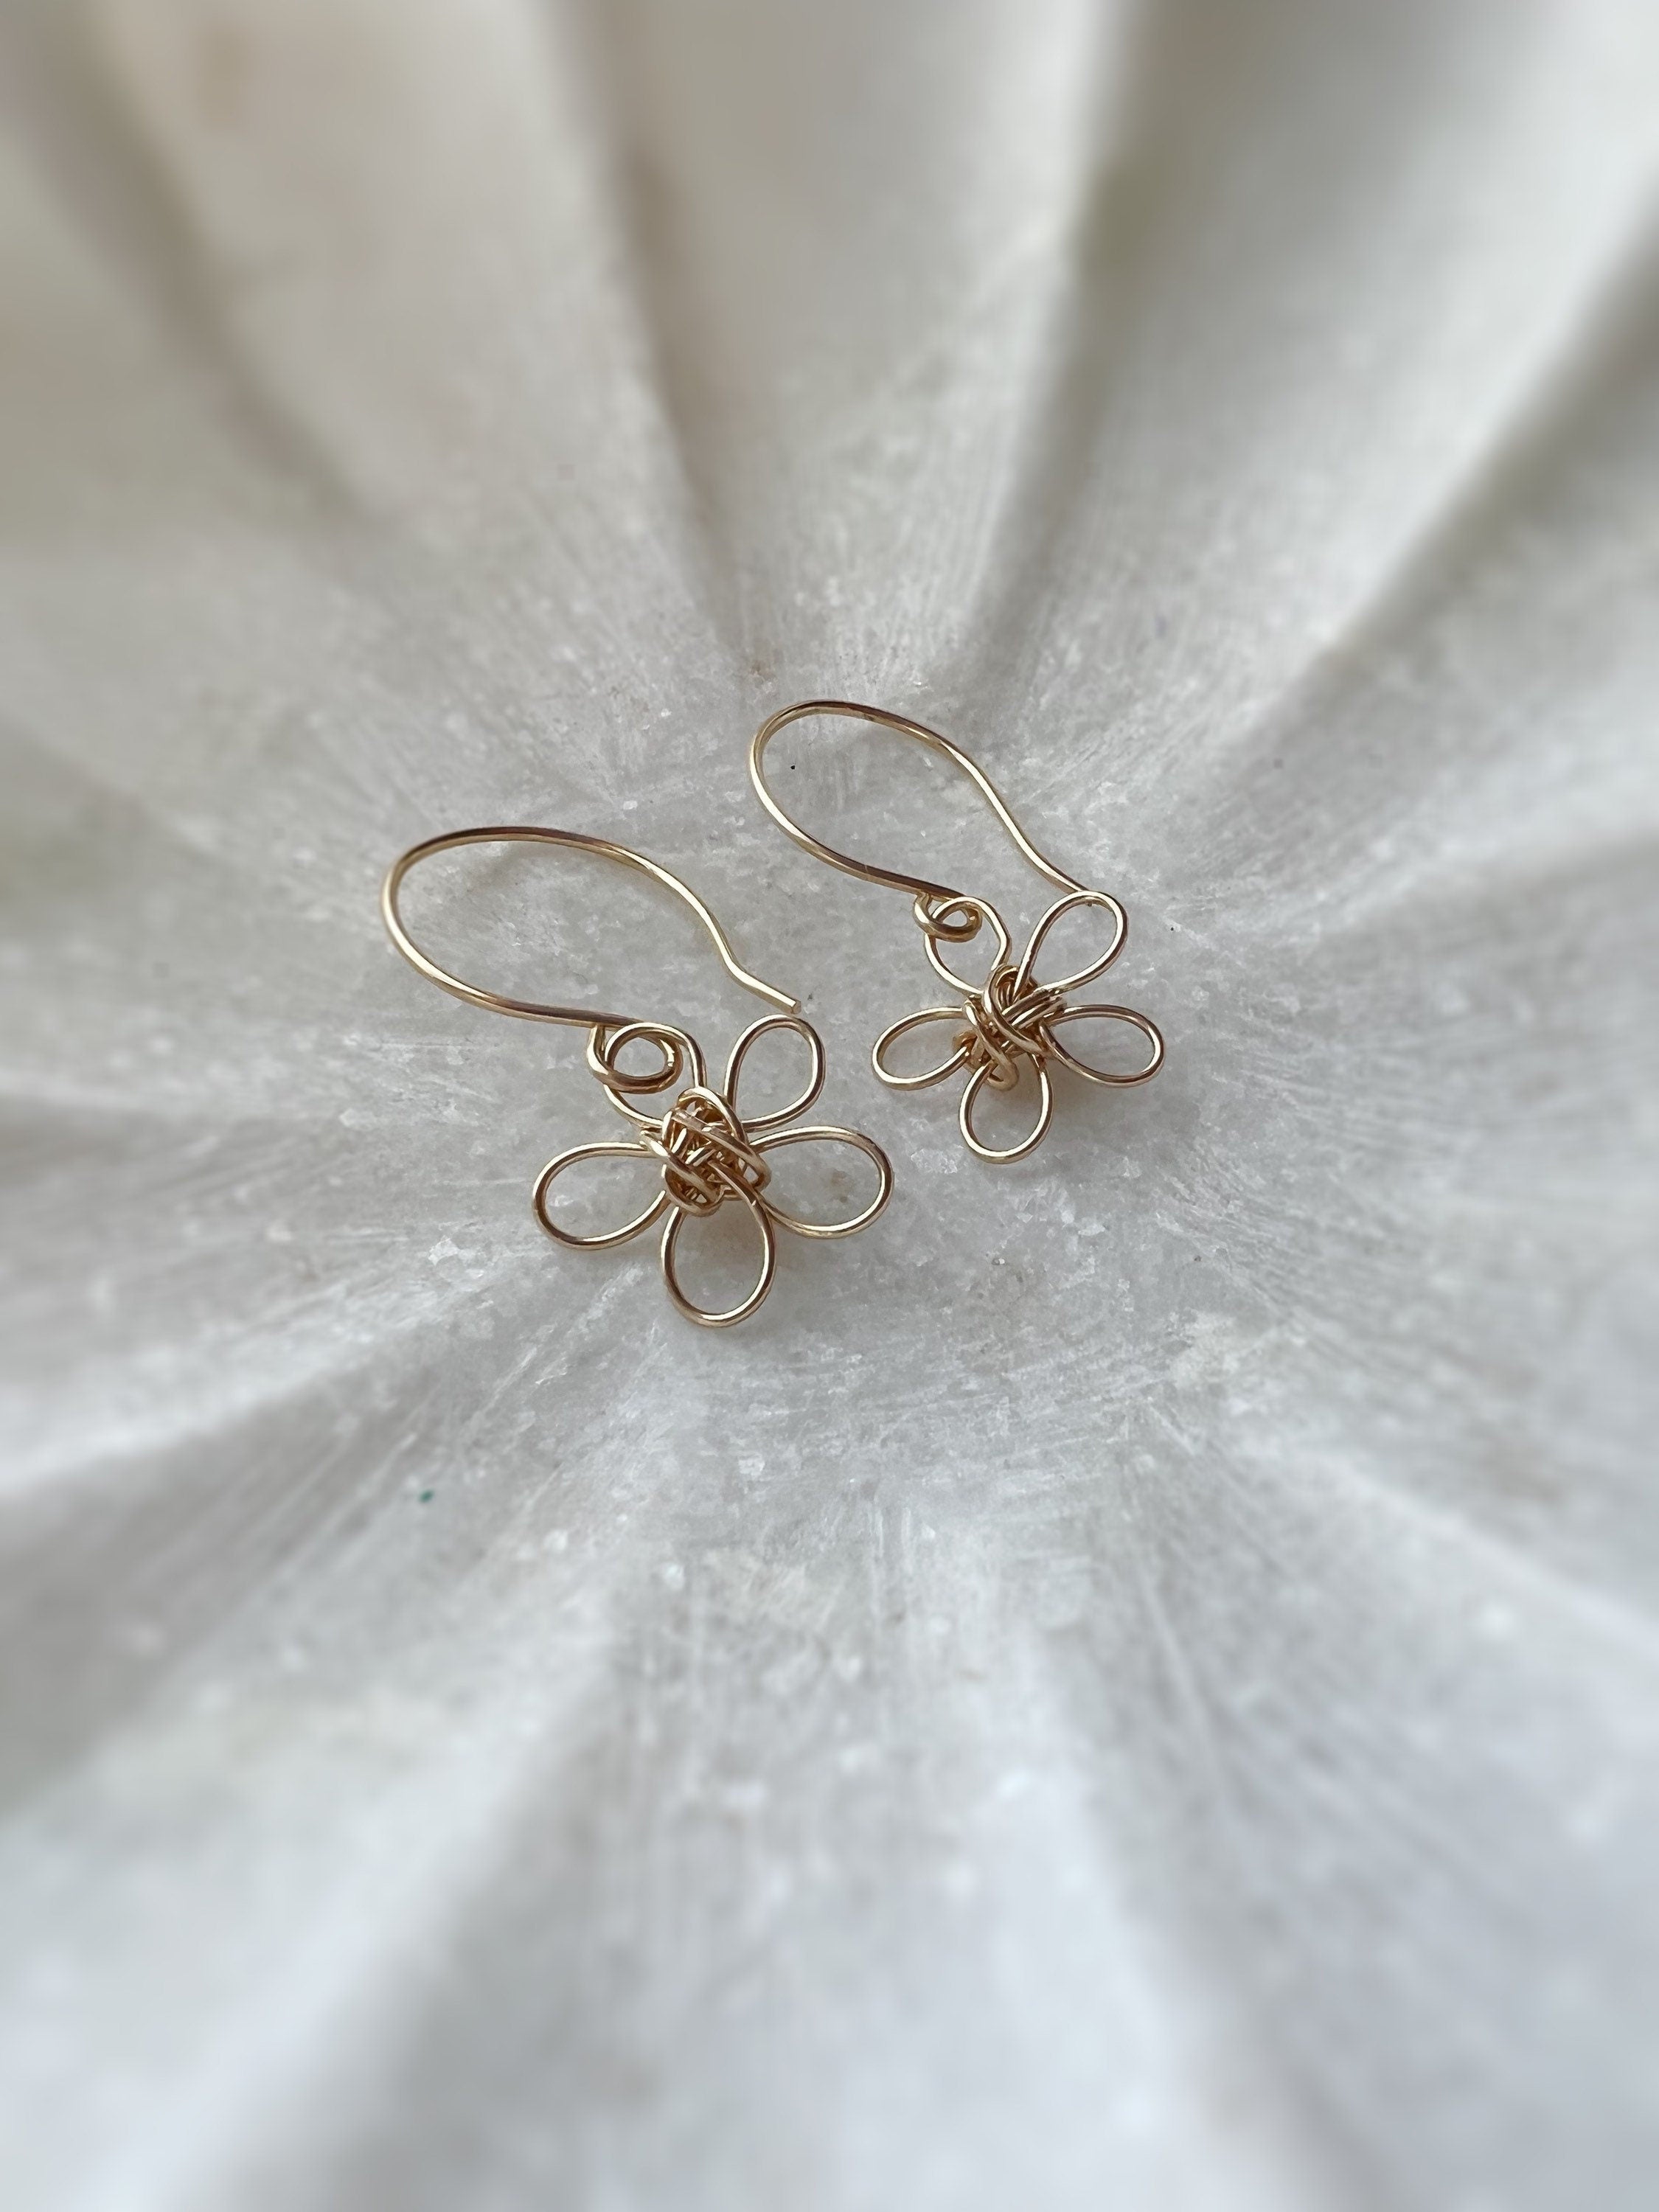 Daisy flower earrings